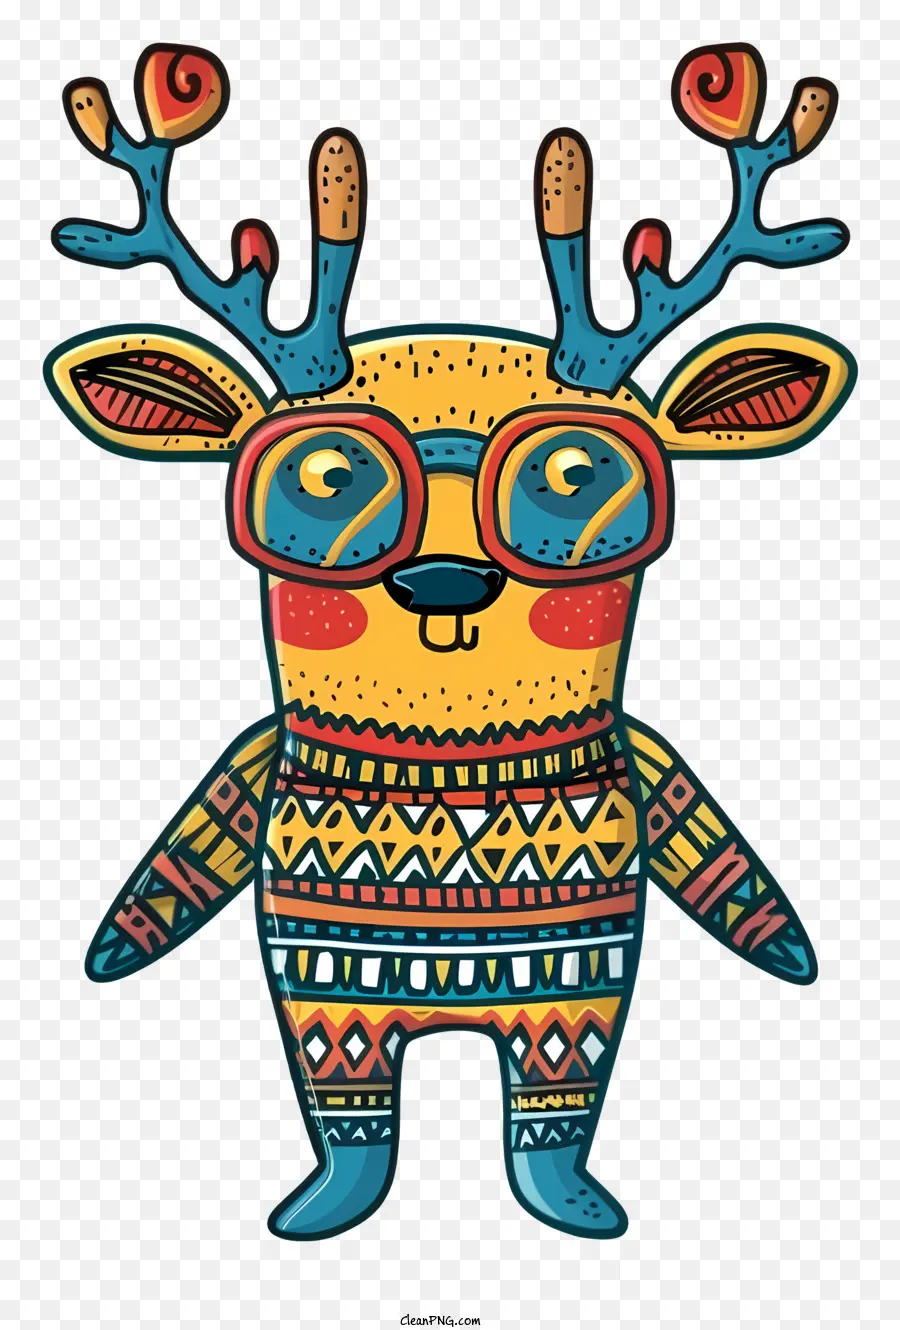 strana renna astratta arte astratta design colorato illustrazione di cervi che indossano occhiali - Cervi astratti colorati con occhiali, in piedi su due gambe